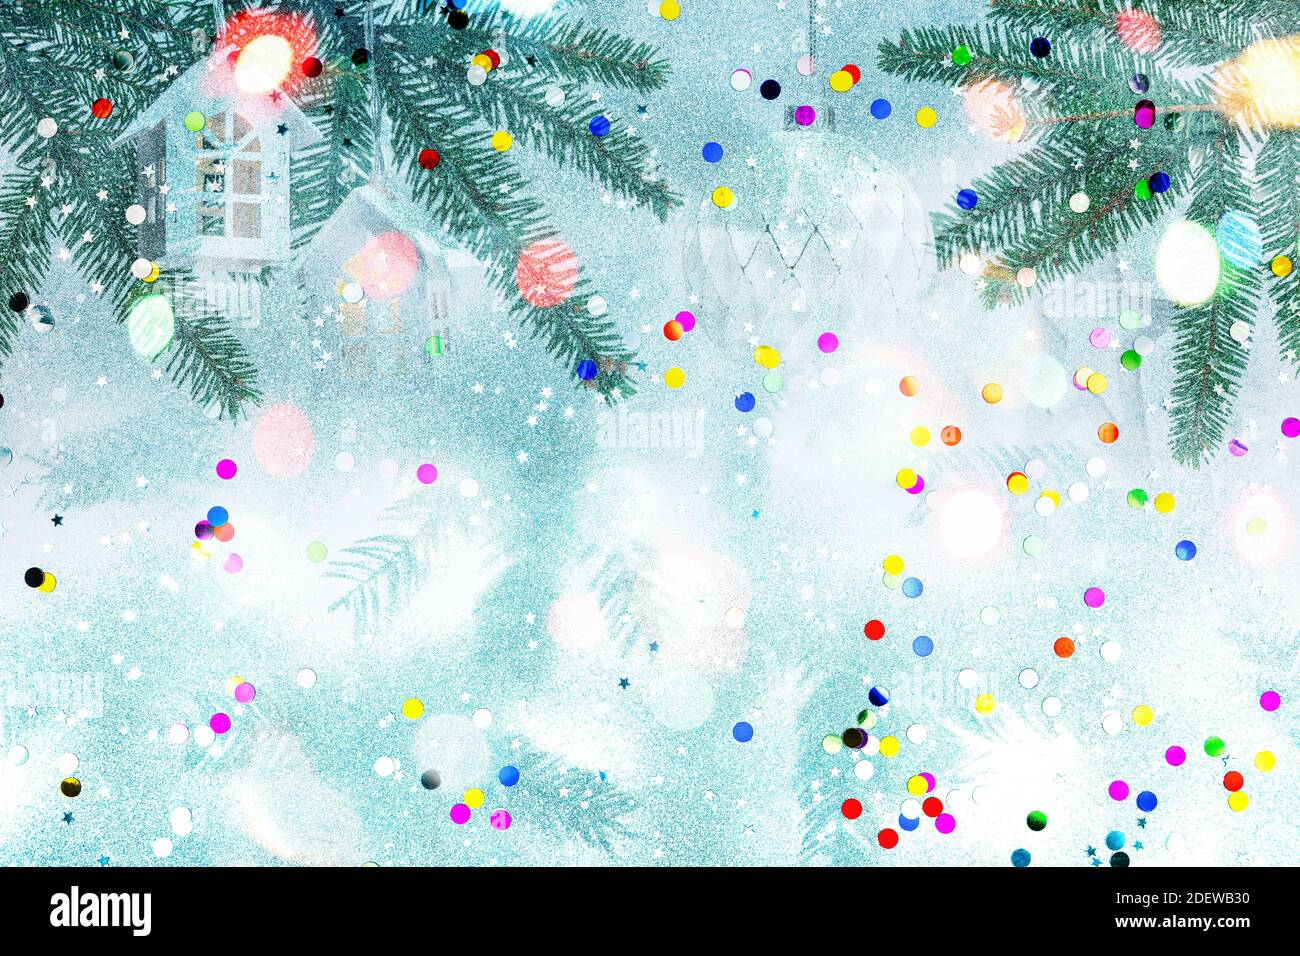 Grüne Tannenzweige geschmückt mit weihnachtsschmuck und Weihnachtsbeleuchtung vor weißem Hintergrund mit bunten Konfetti. Doppelbelichtung Stockfoto